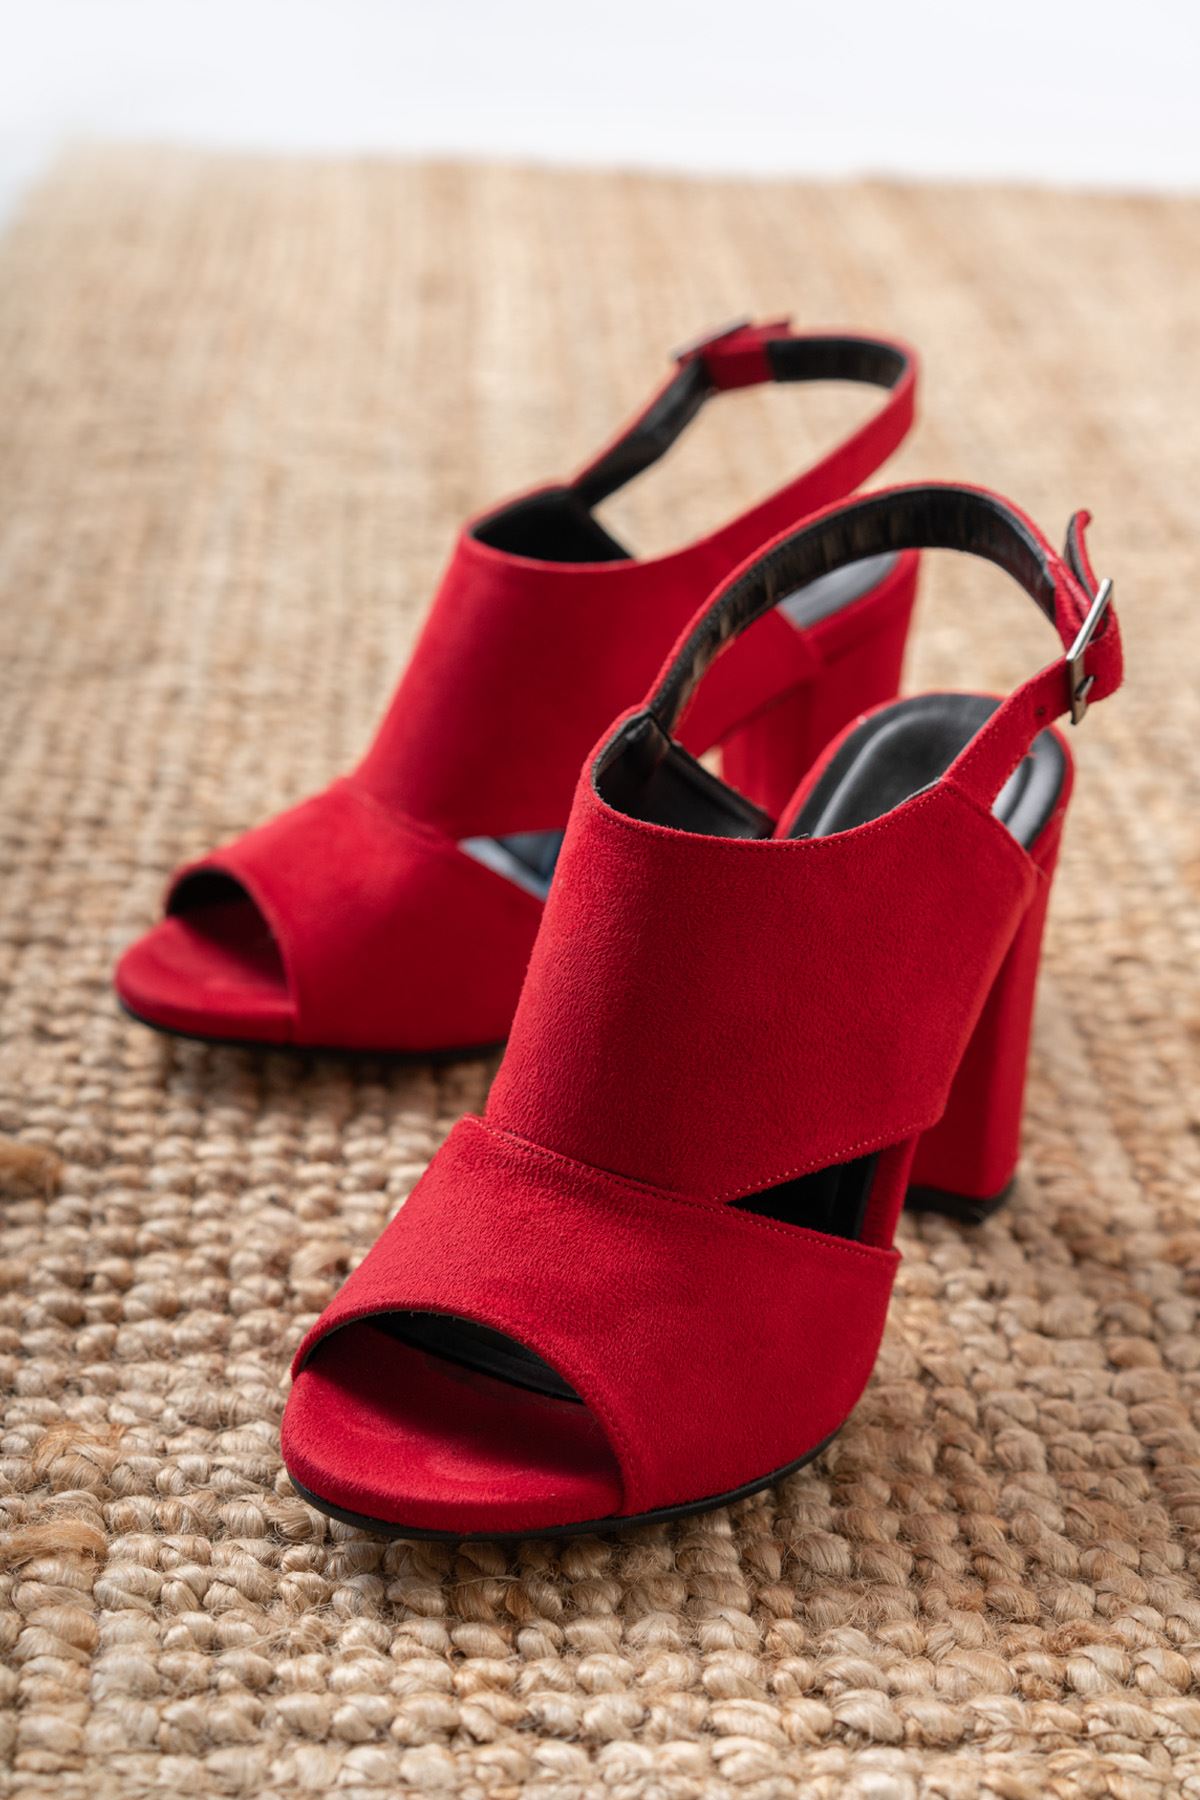 Seila Kırmızı Süet Yüksek Topuklu Kadın Ayakkabı   